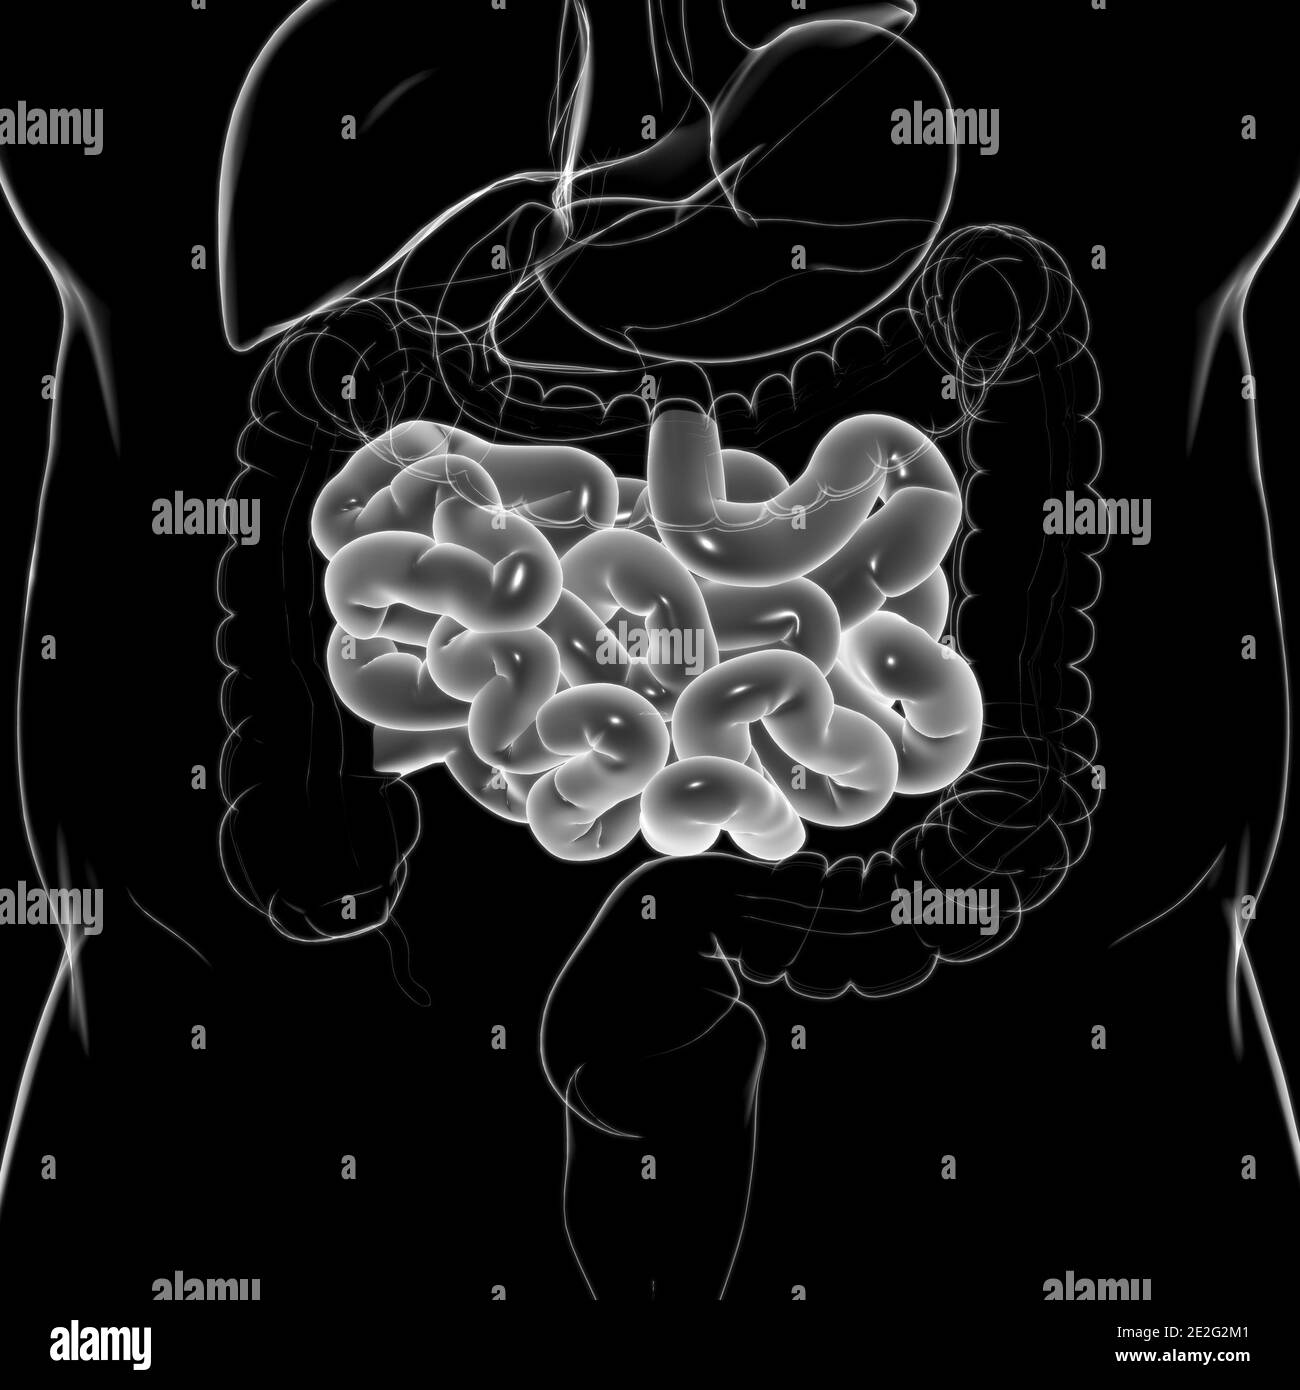 Illustrazione 3D dell'intestino tenue sistema digestivo umano Anatomia per il concetto medico Foto Stock